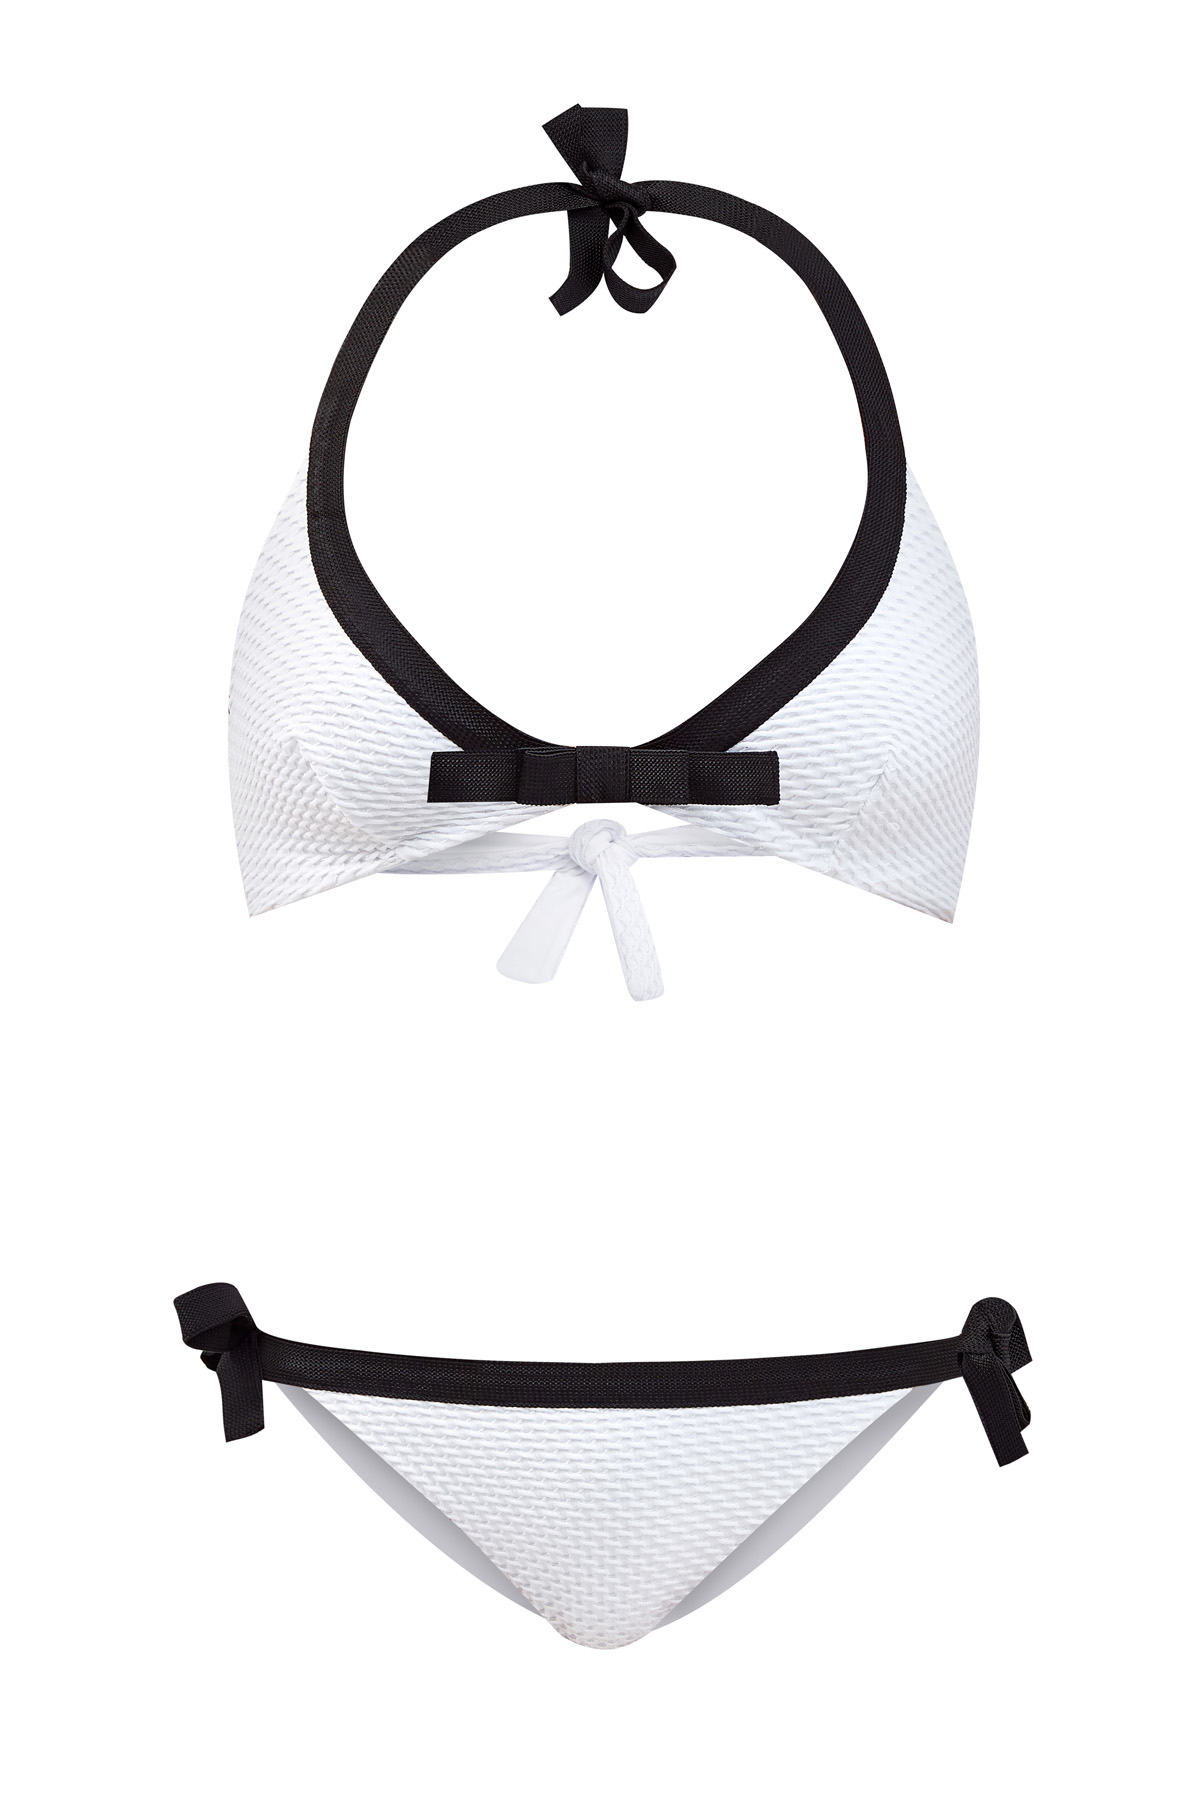 Монохромные плавки-бикини из двухслойного фактурного материала с завязками FISICO, цвет черно-белый, размер S;L;XS - фото 1